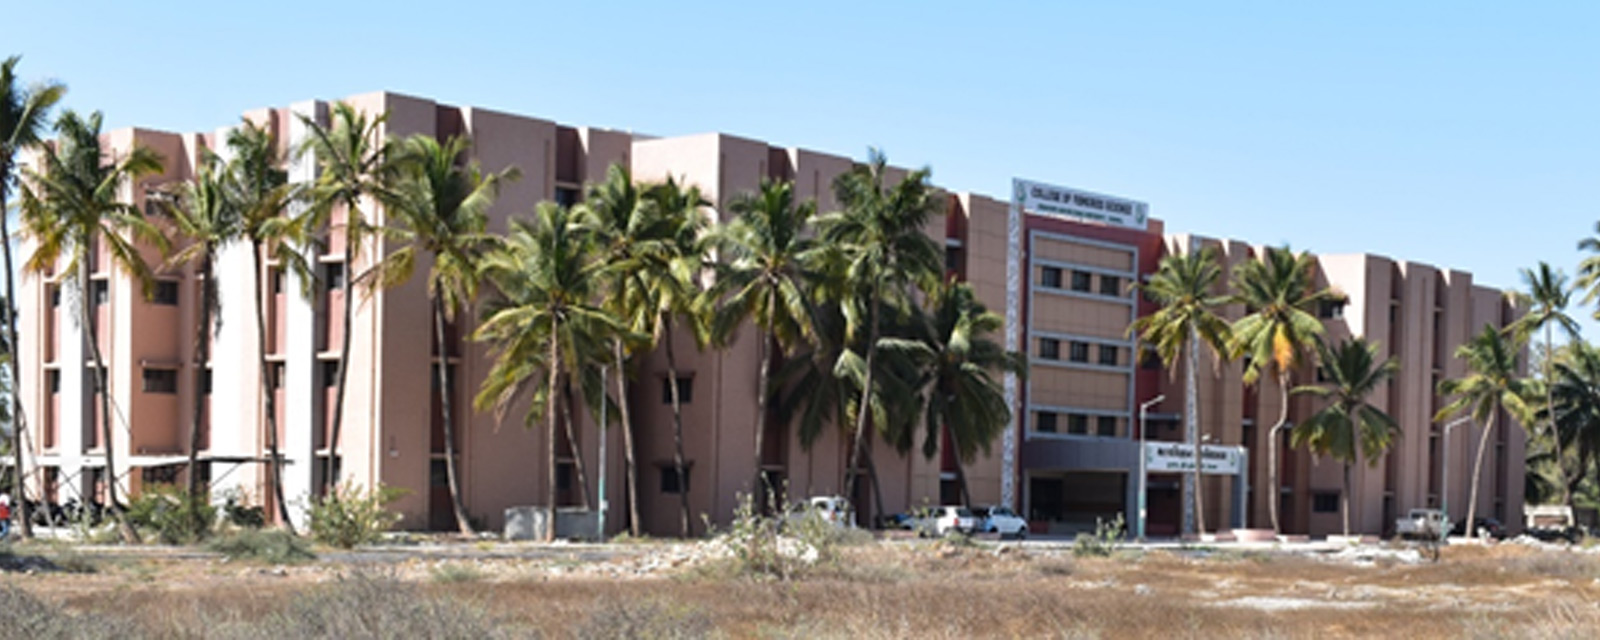 College of Fisheries Science, Kamdhenu University, Veraval, Gujarat.